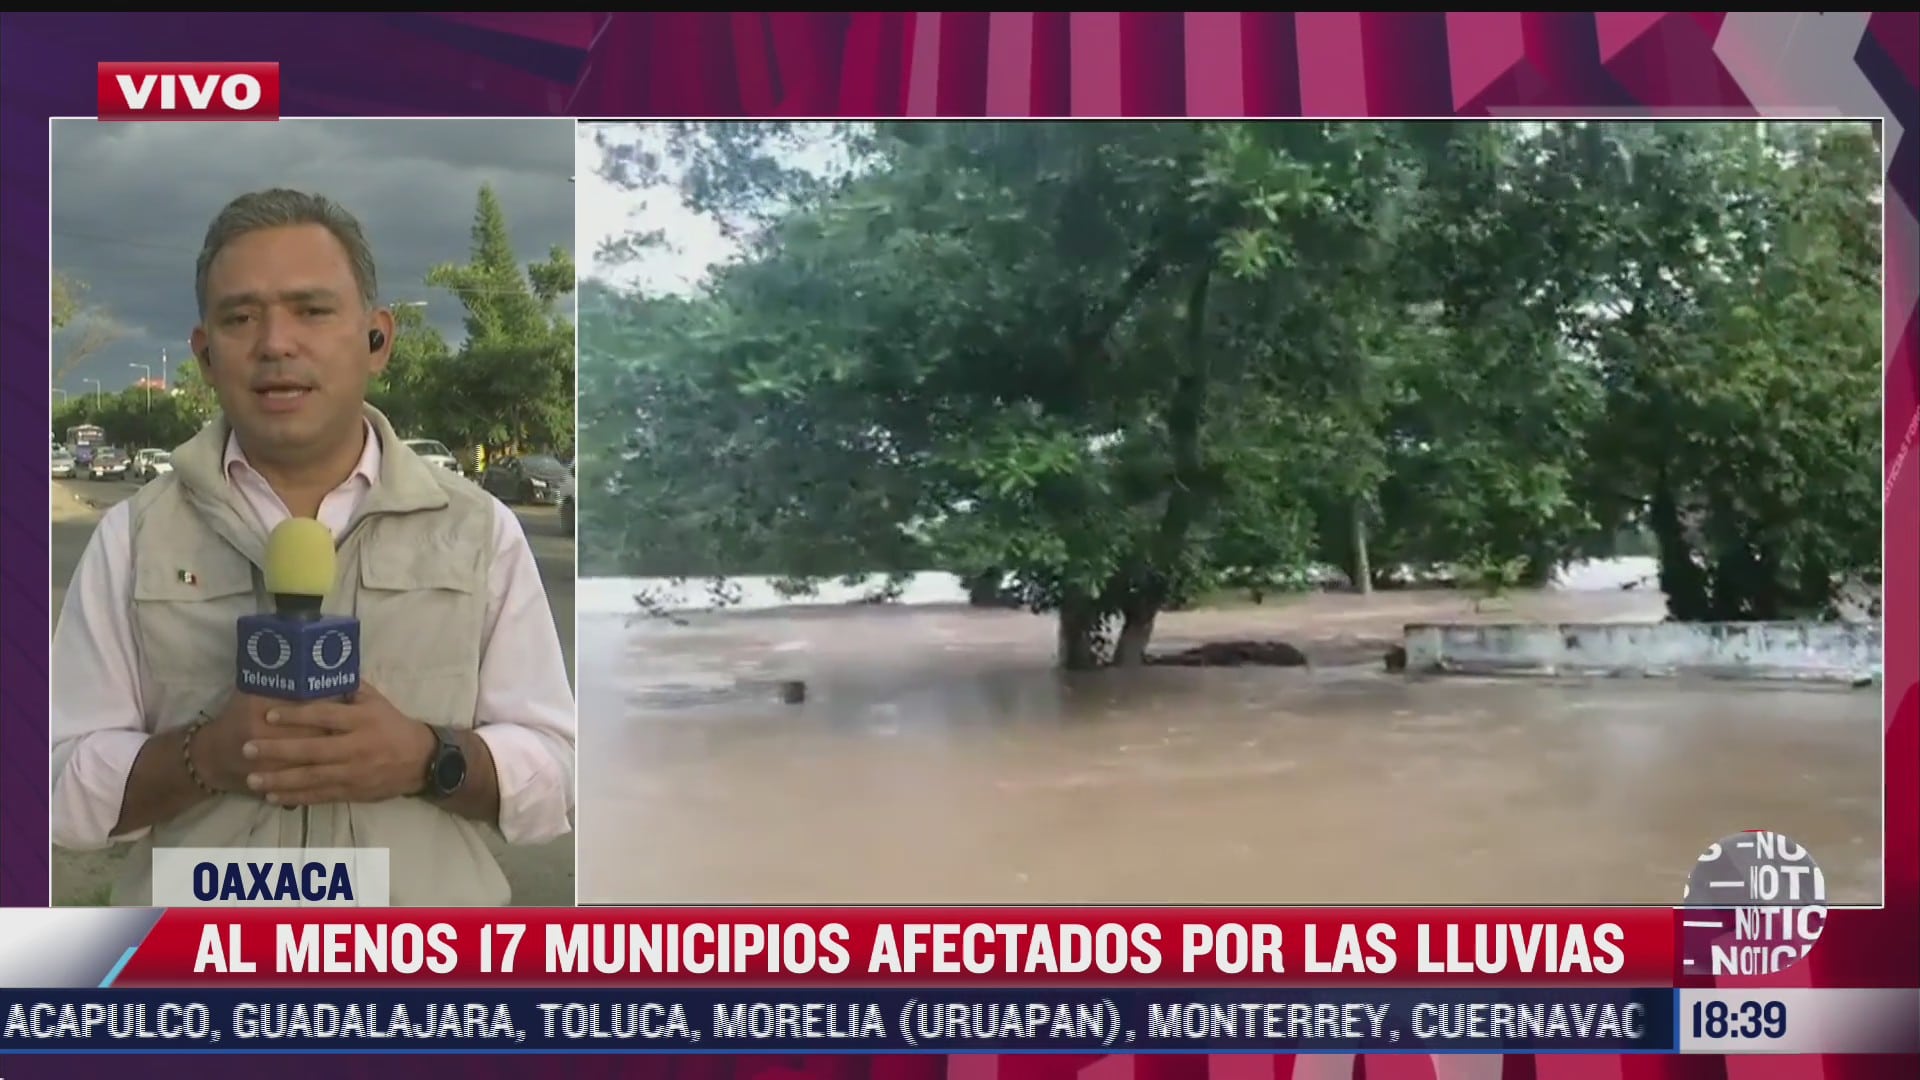 al menos 17 municipios han sido afectados por las lluvias en oaxaca